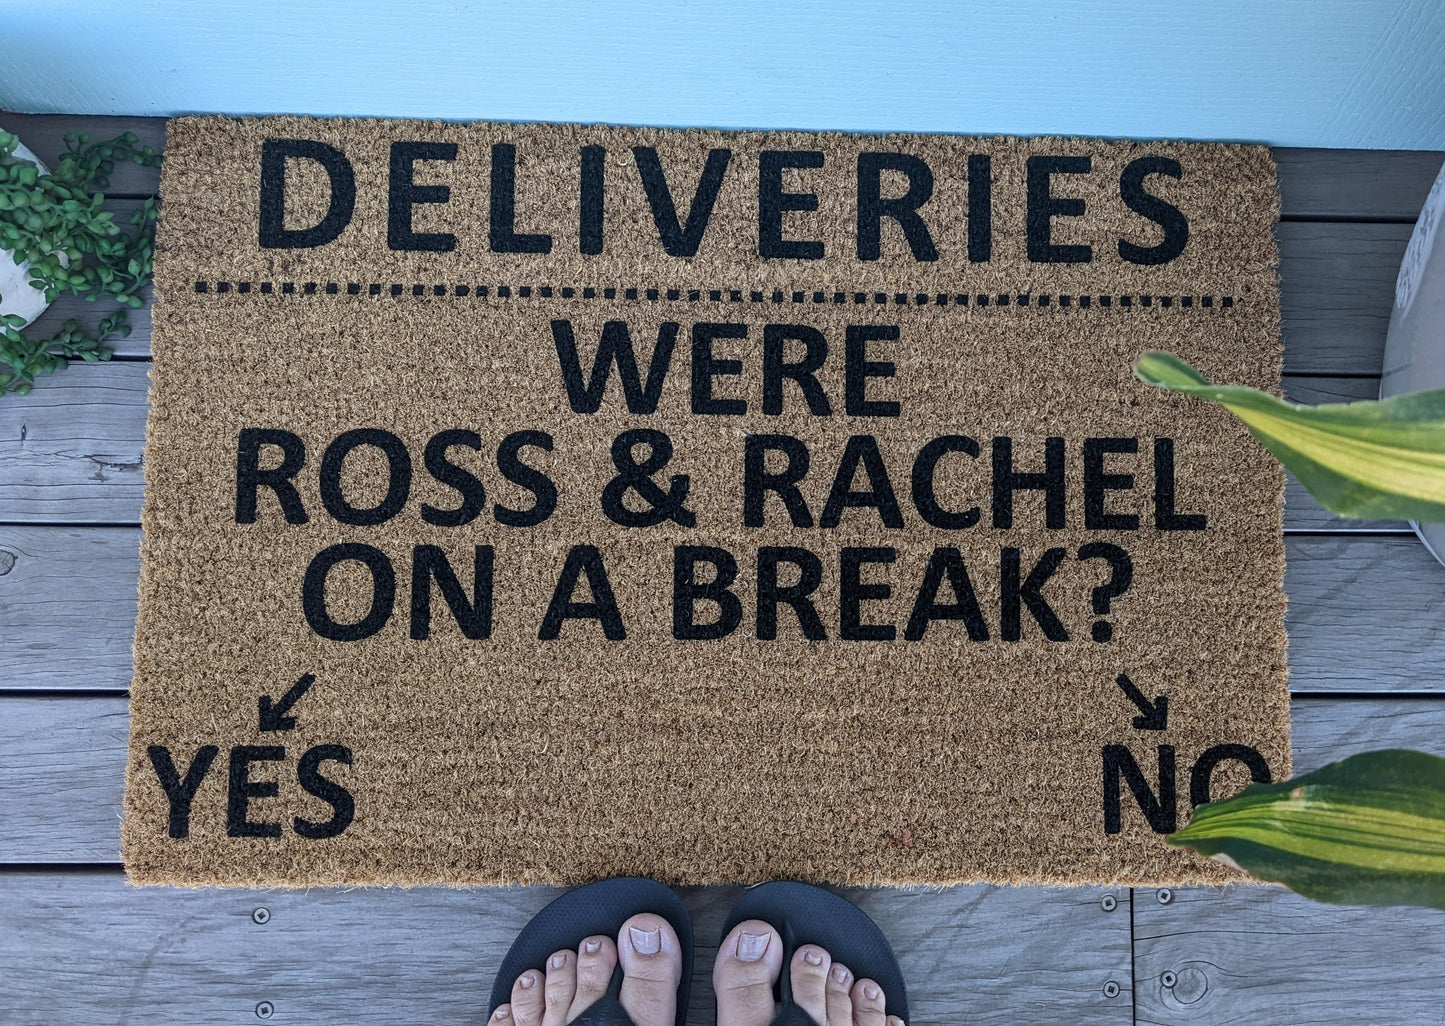 Funny Ross and Rachel doormat